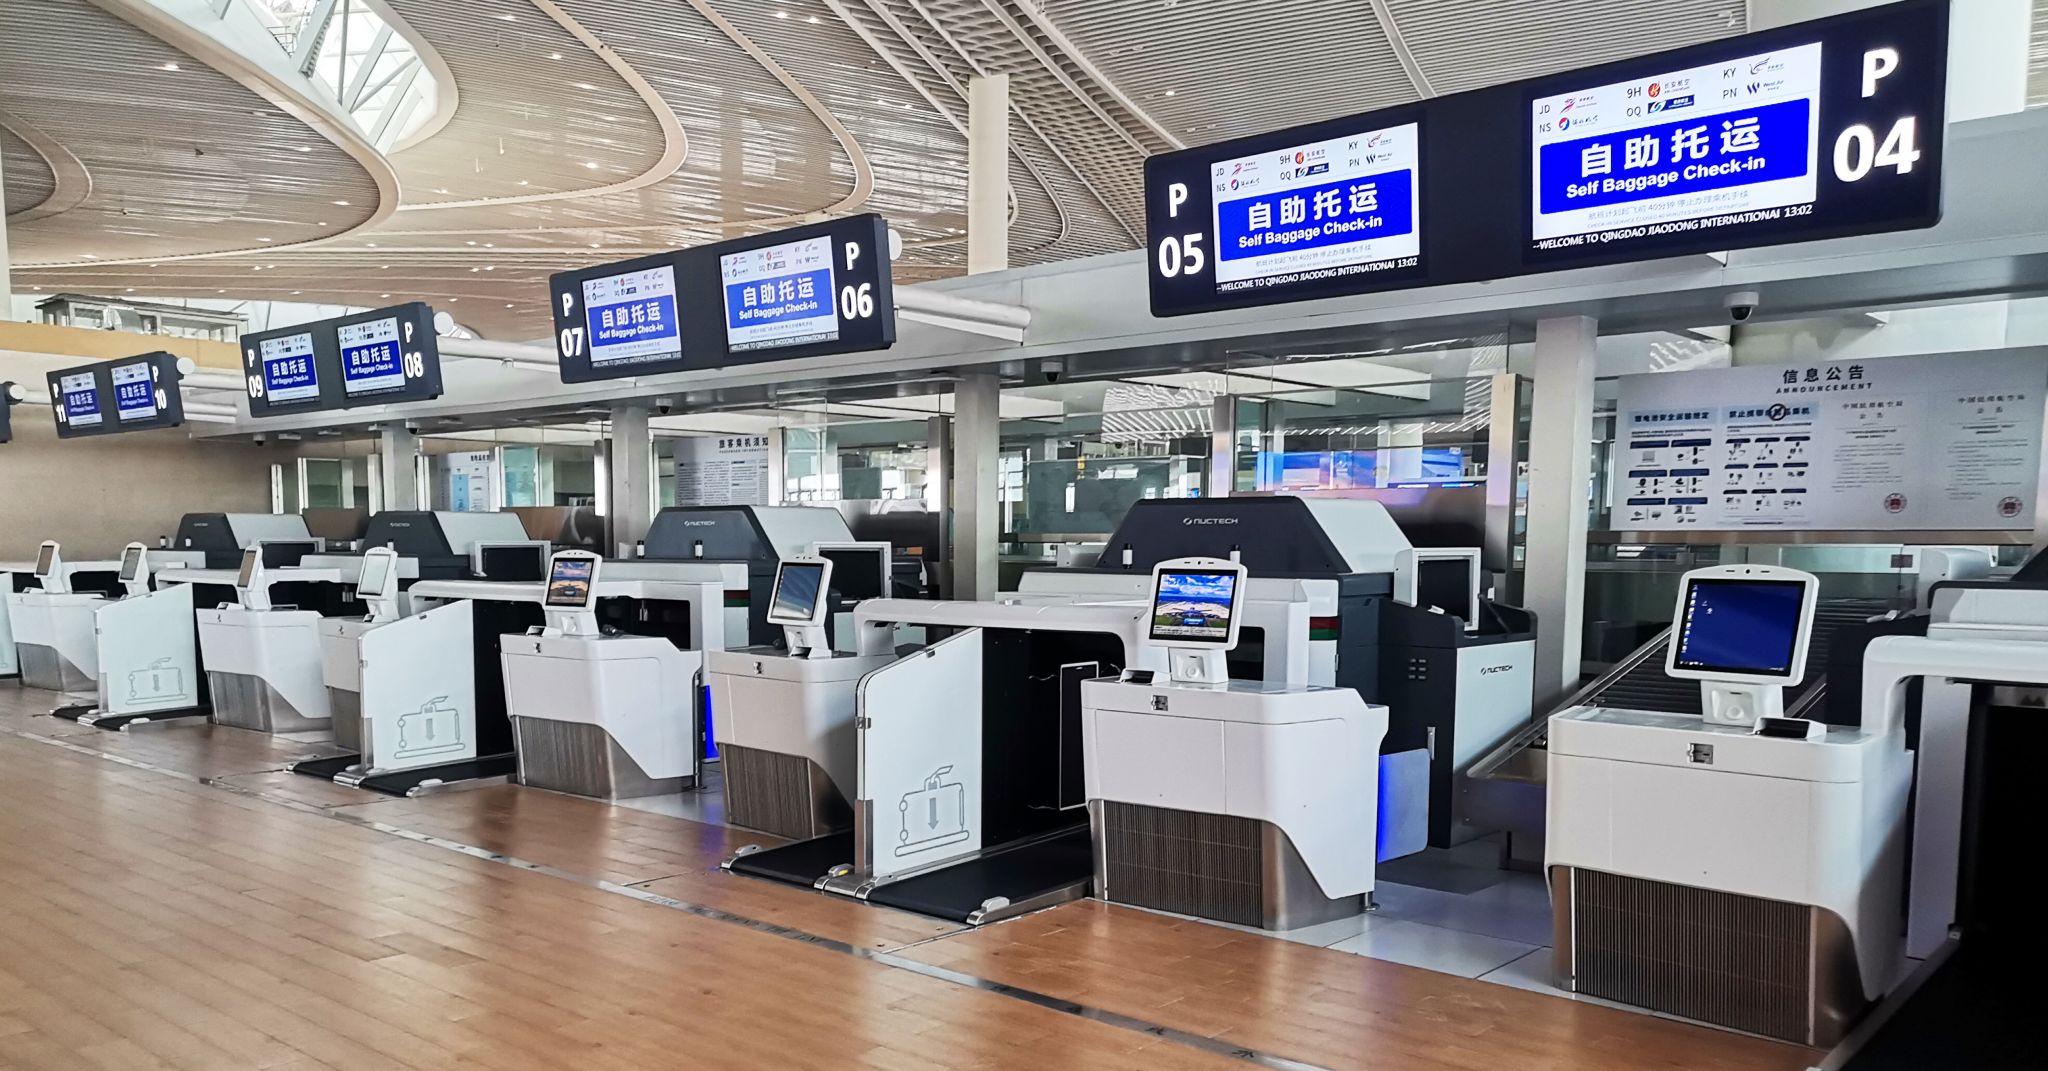 Qingdao Airport Self-service Bag Drop/ Bag Drop Equipment Shell